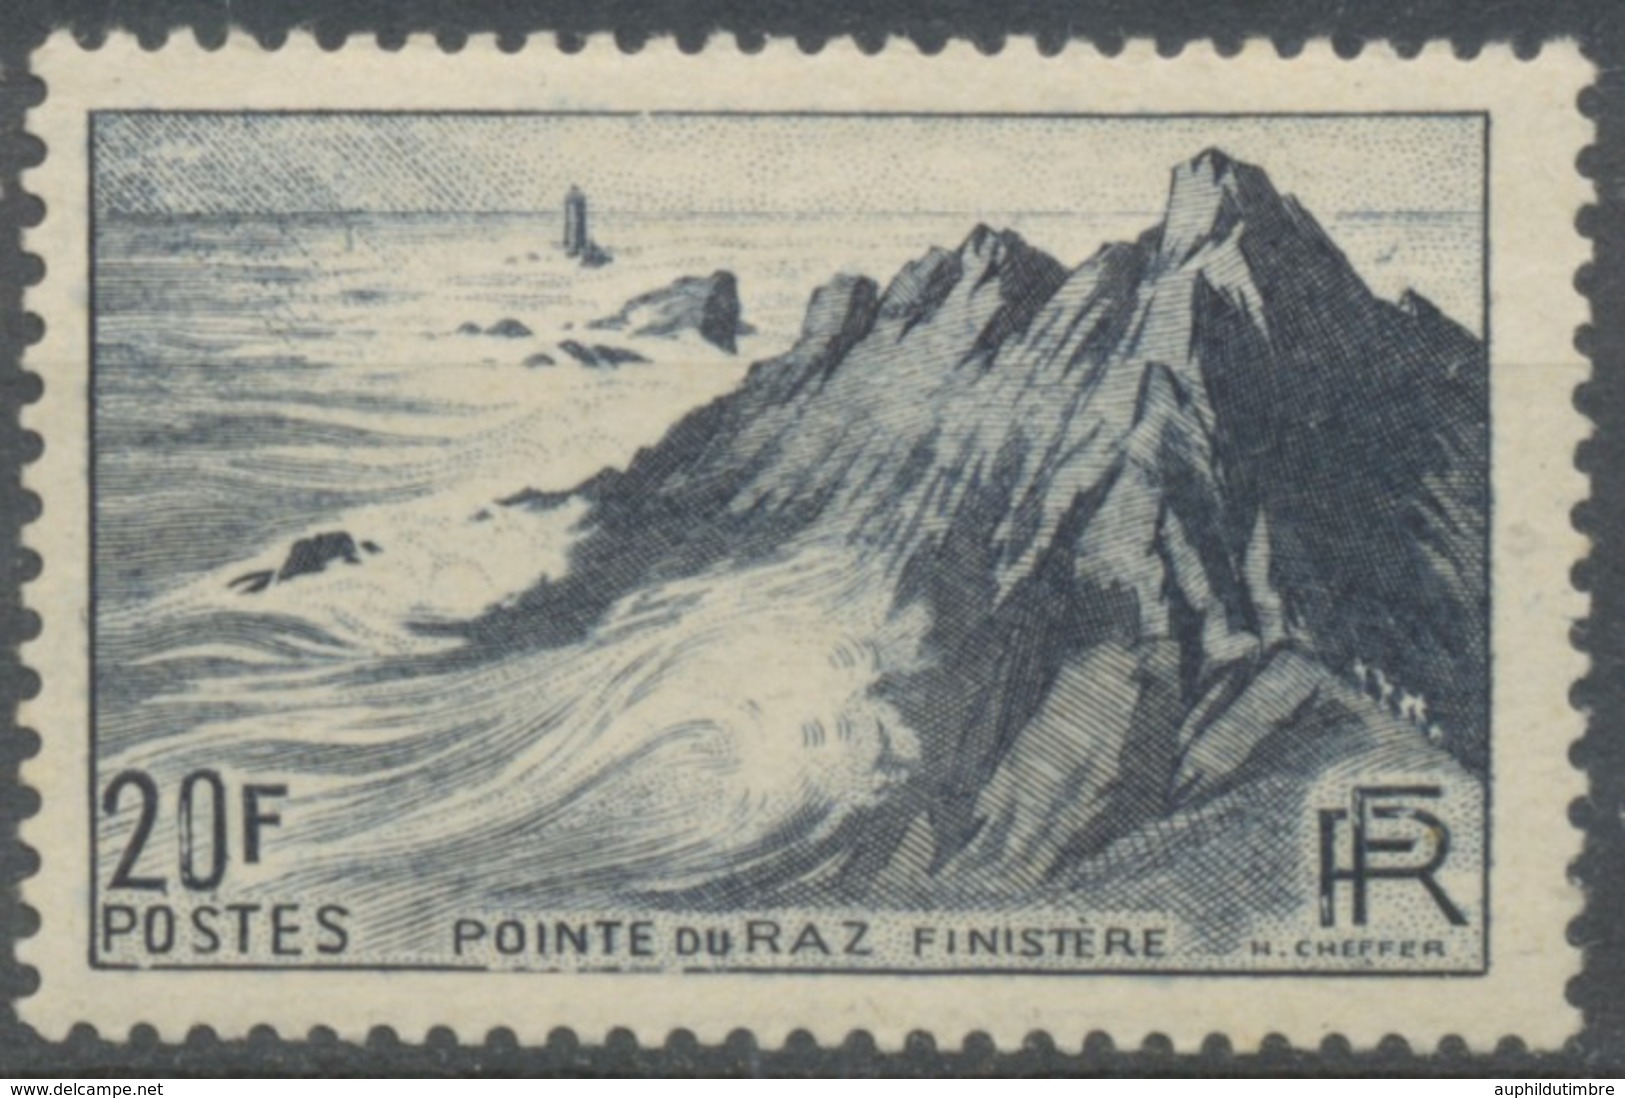 Monuments Et Sites. Pointe Du Raz. 20f. Bleu-noir Neuf Luxe ** Y764 - Unused Stamps